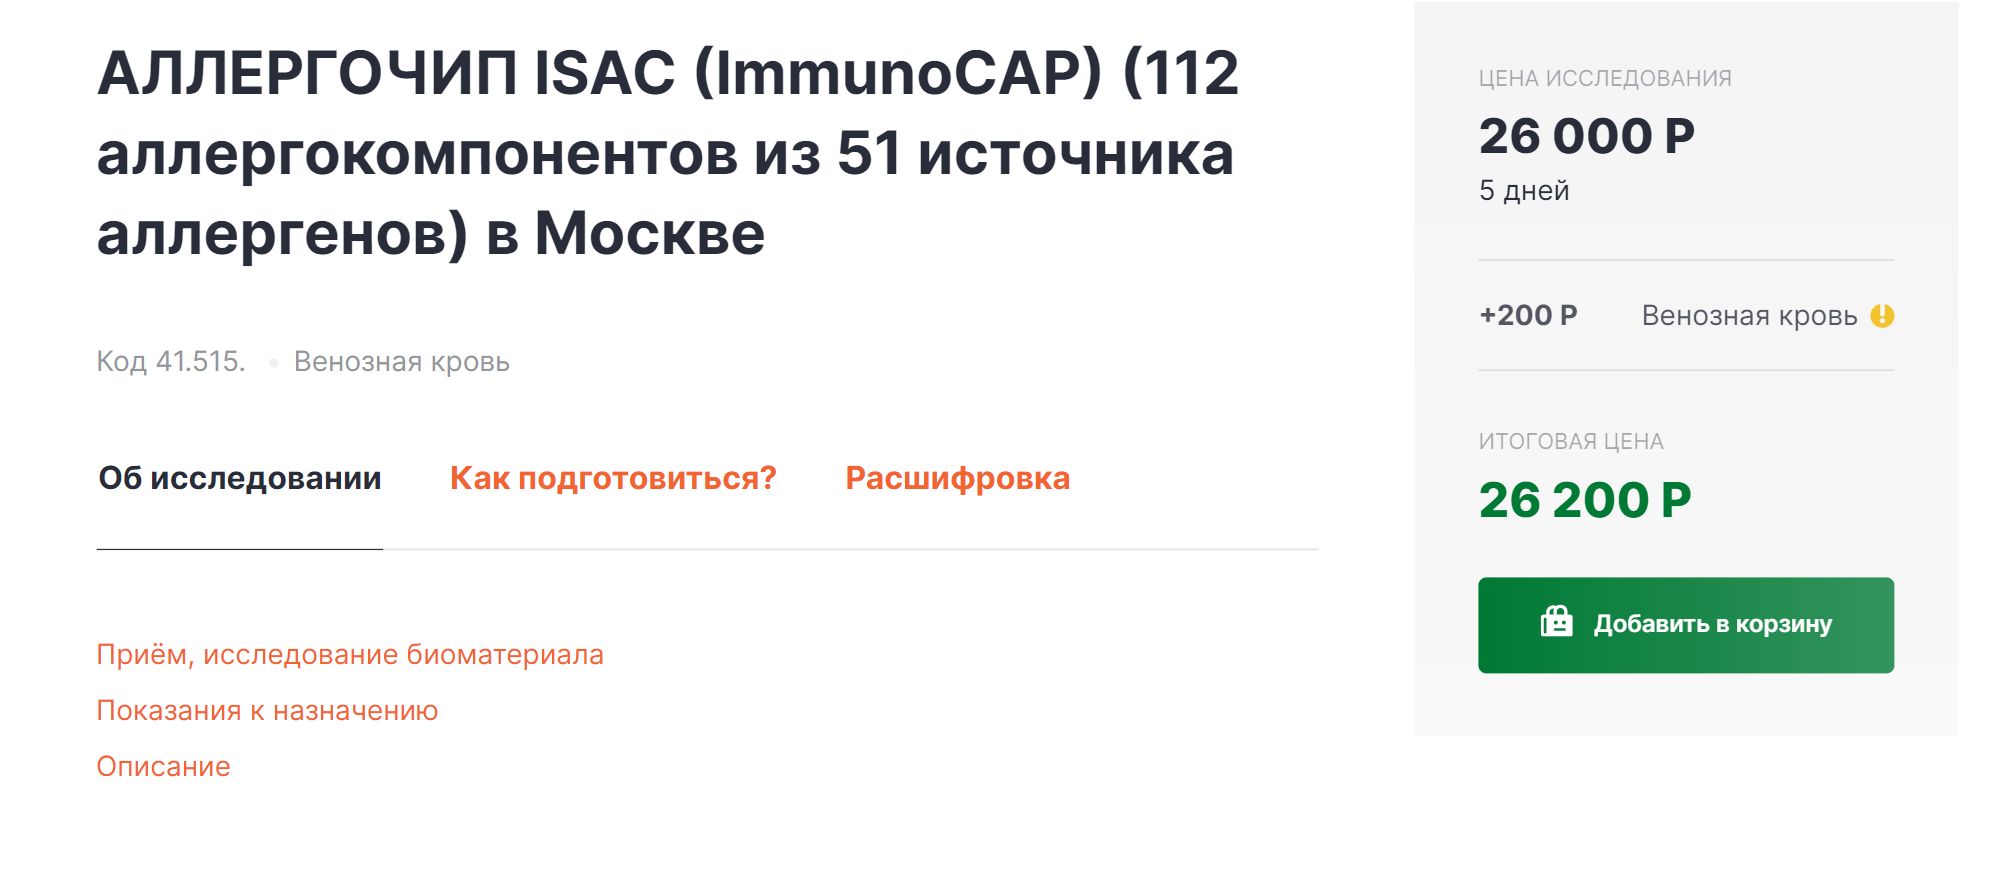 Цена исследования на 112 аллергенов в Москве стартует с 25 000 ₽. Делать его не стоит. Источник: «Гемотест»